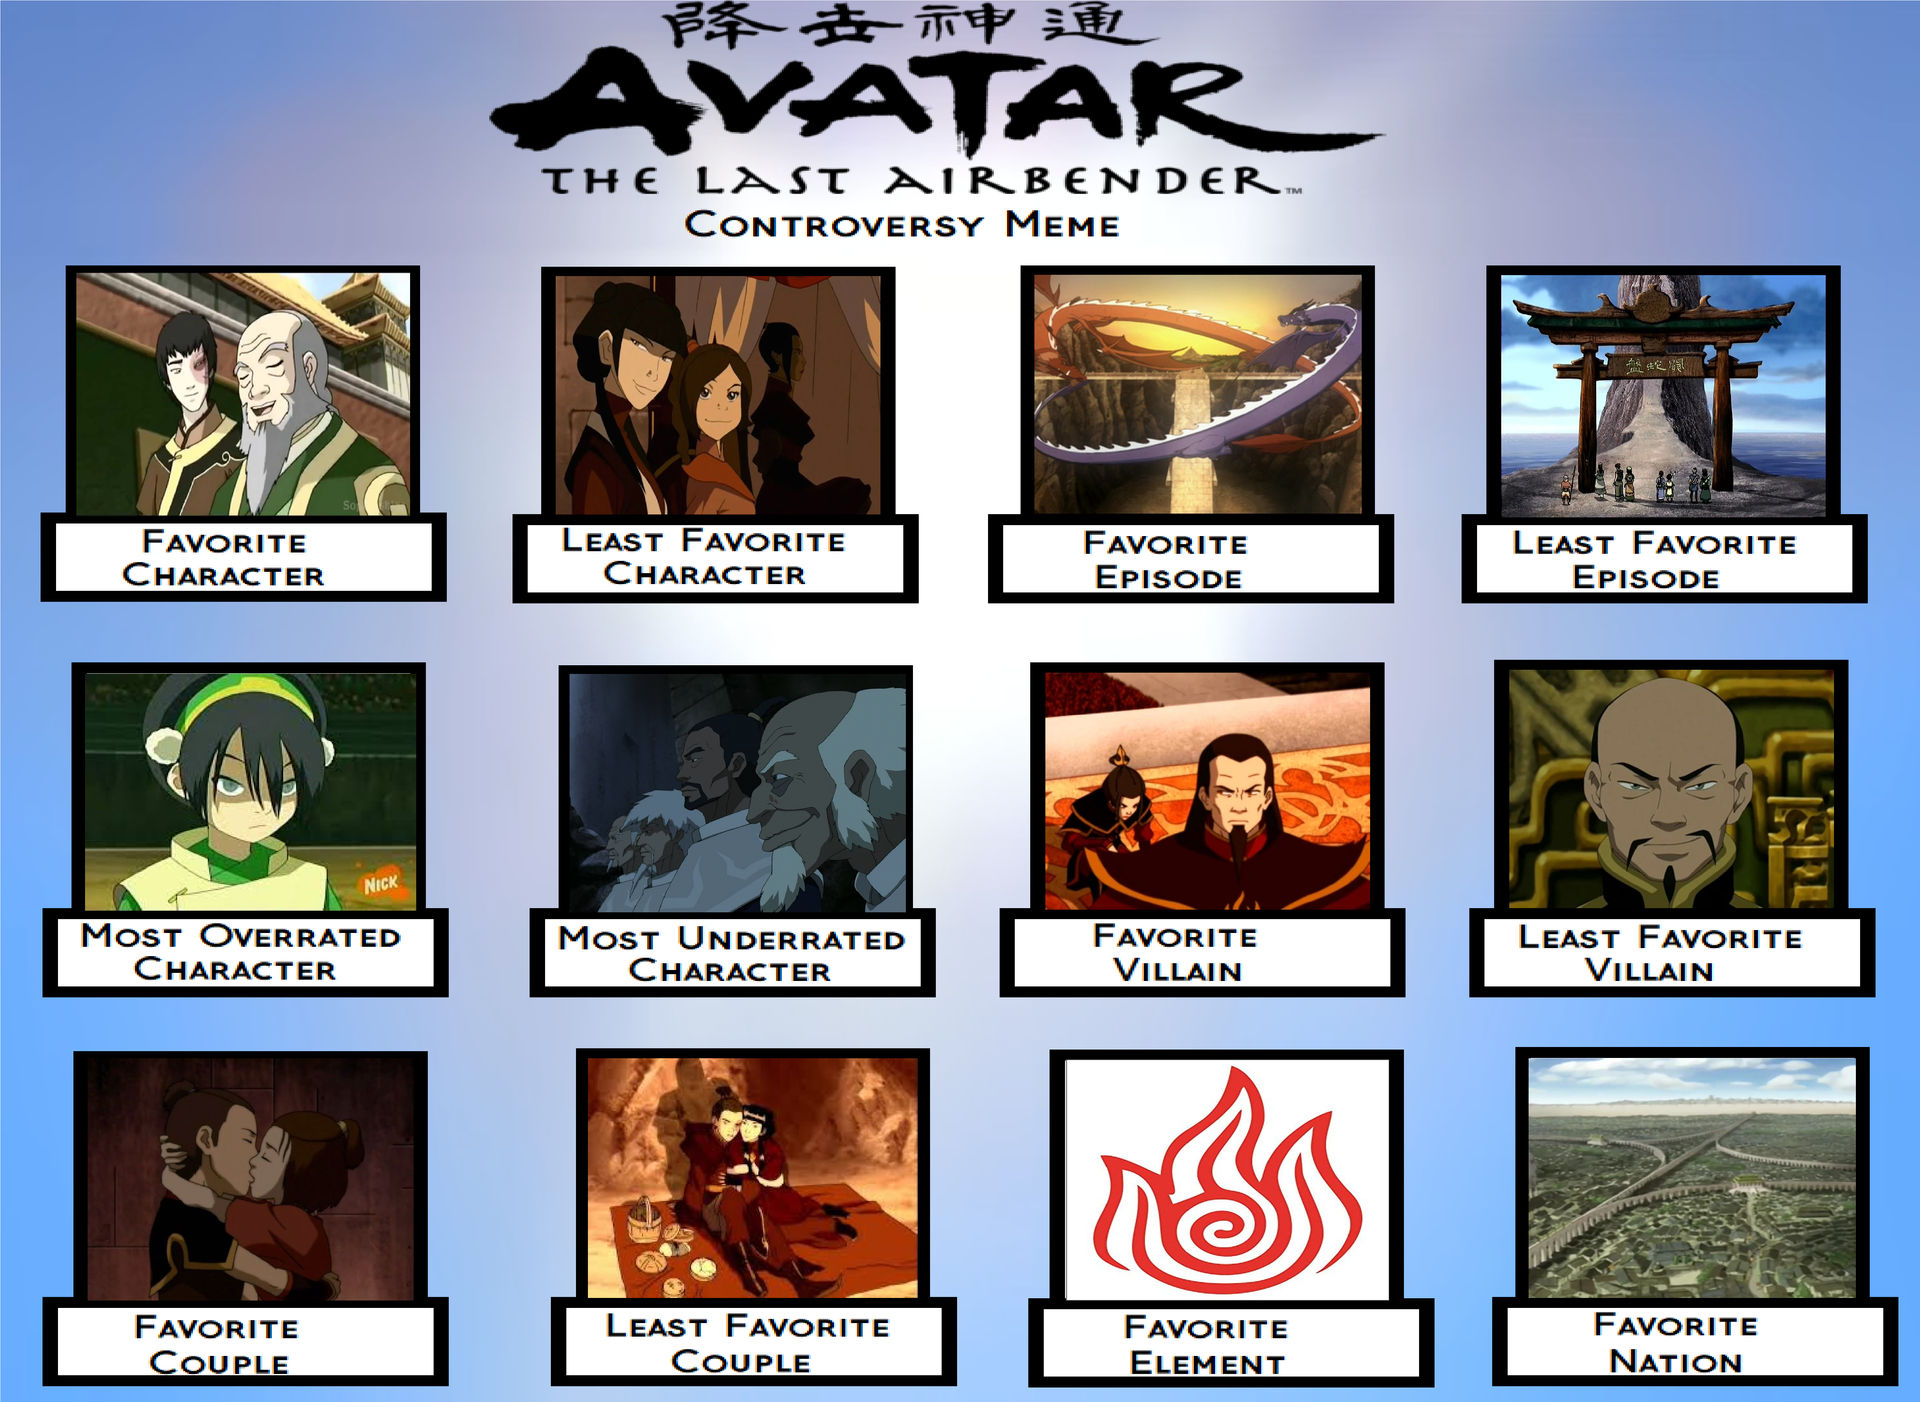 Câu chuyện tranh cãi xoay quanh Avatar Thợ Lặn Cuối Cùng đã được giải quyết và đưa ra kết thúc hài hước nhưng cực kỳ thuyết phục. Hãy đón xem và khám phá bí mật đằng sau những cuộc tranh luận nảy lửa!